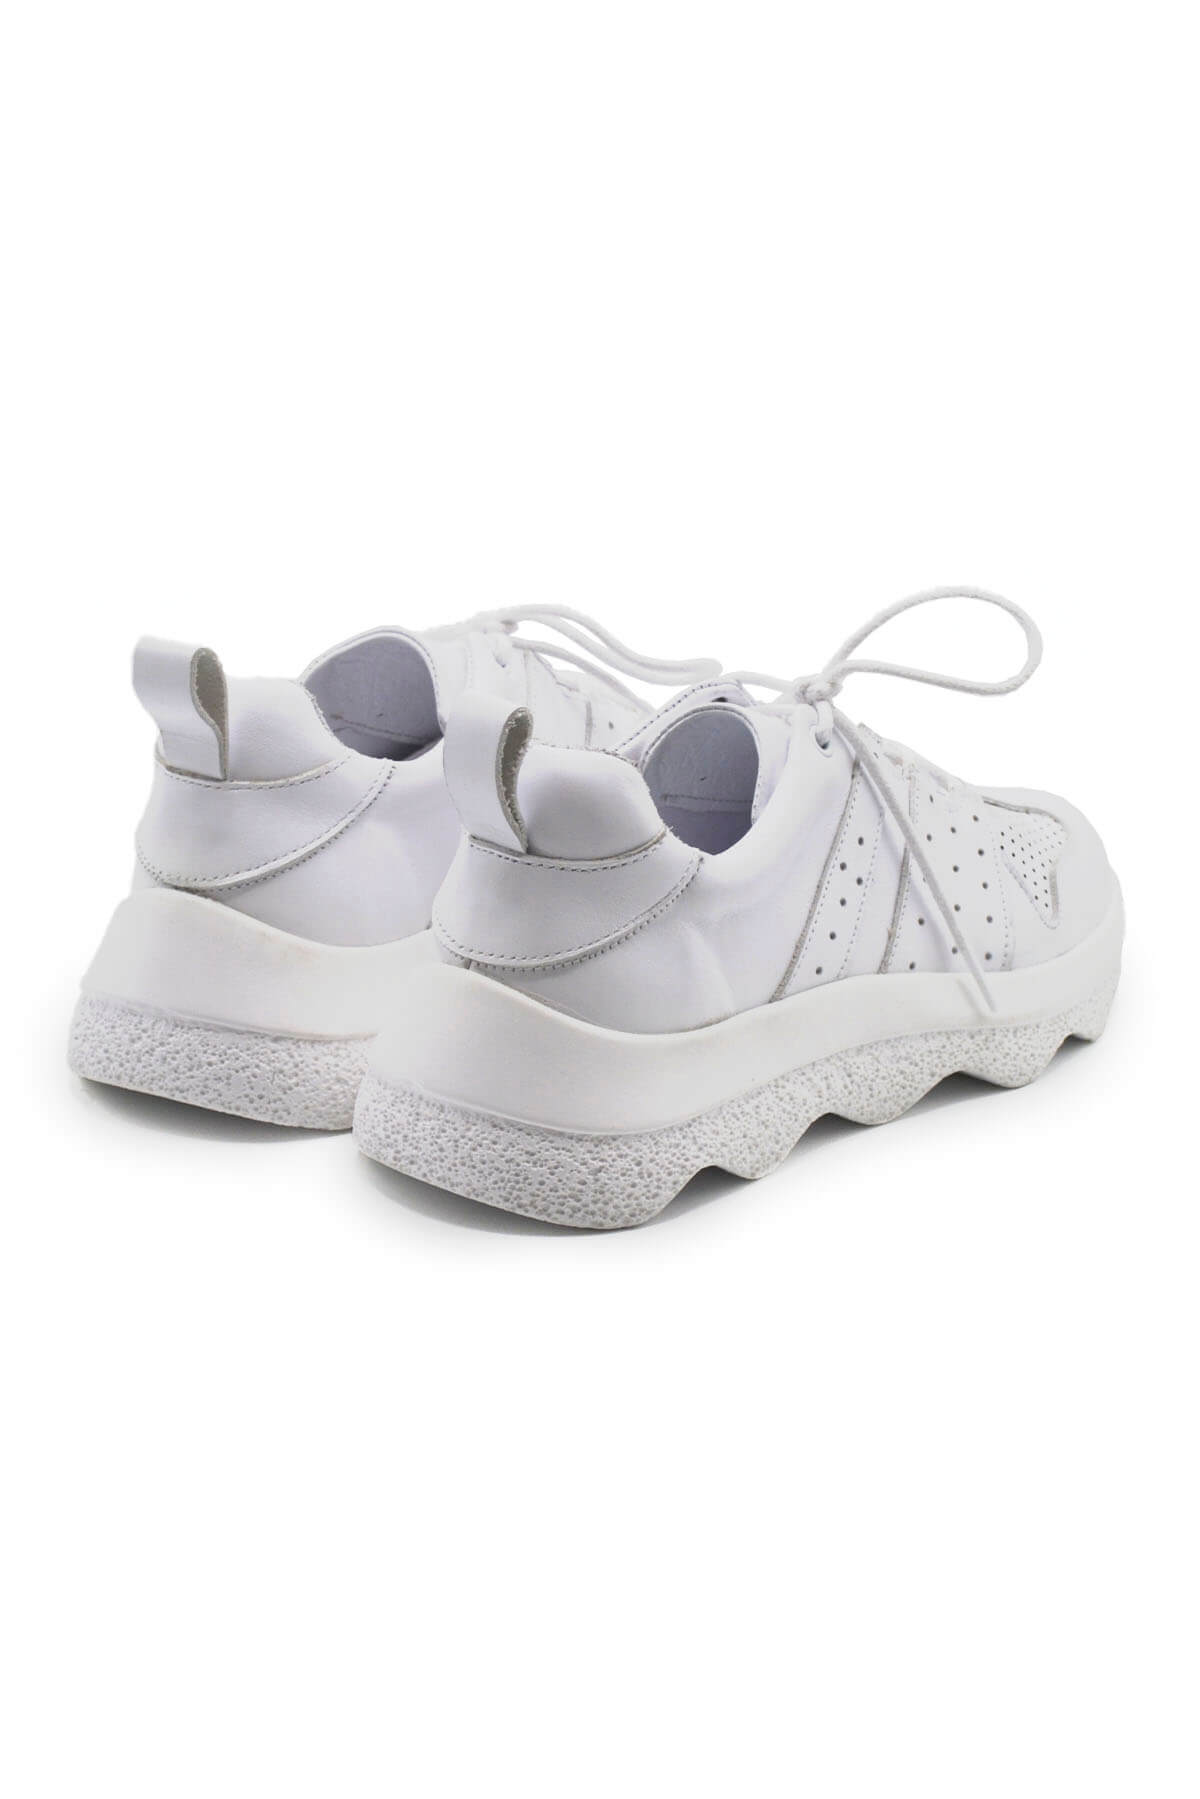 Kadın Deri Sneakers Ayakkabı Beyaz 2314001Y